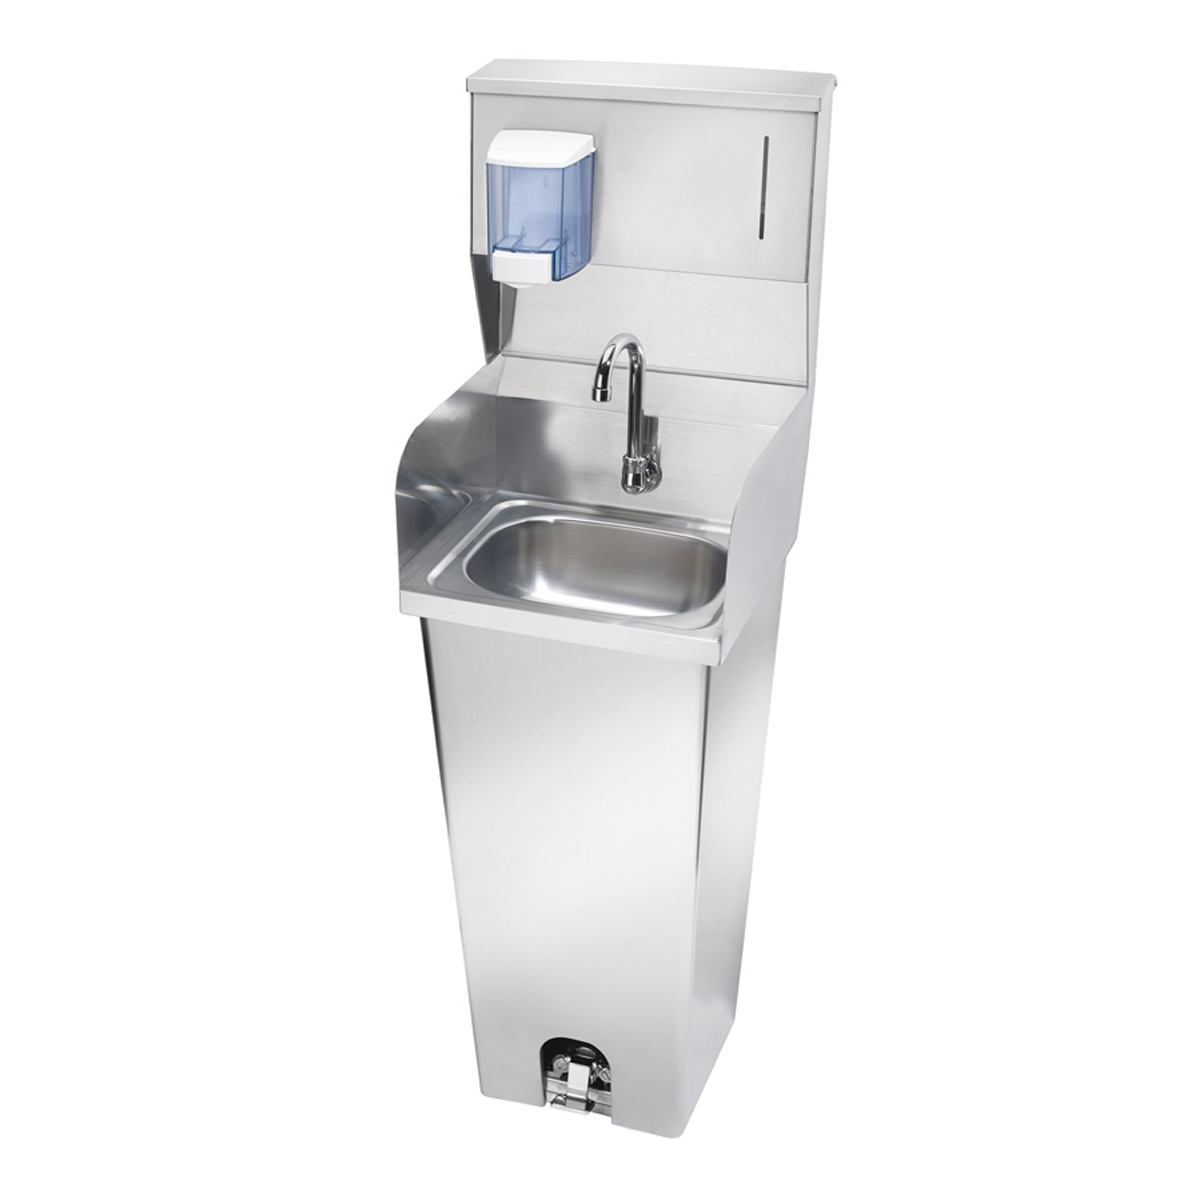 Krowne Metal HS-42 - 16" Wide Foot Valve Pedestal Hand Sink with Side Splashes & Soap/Towel Dispenser